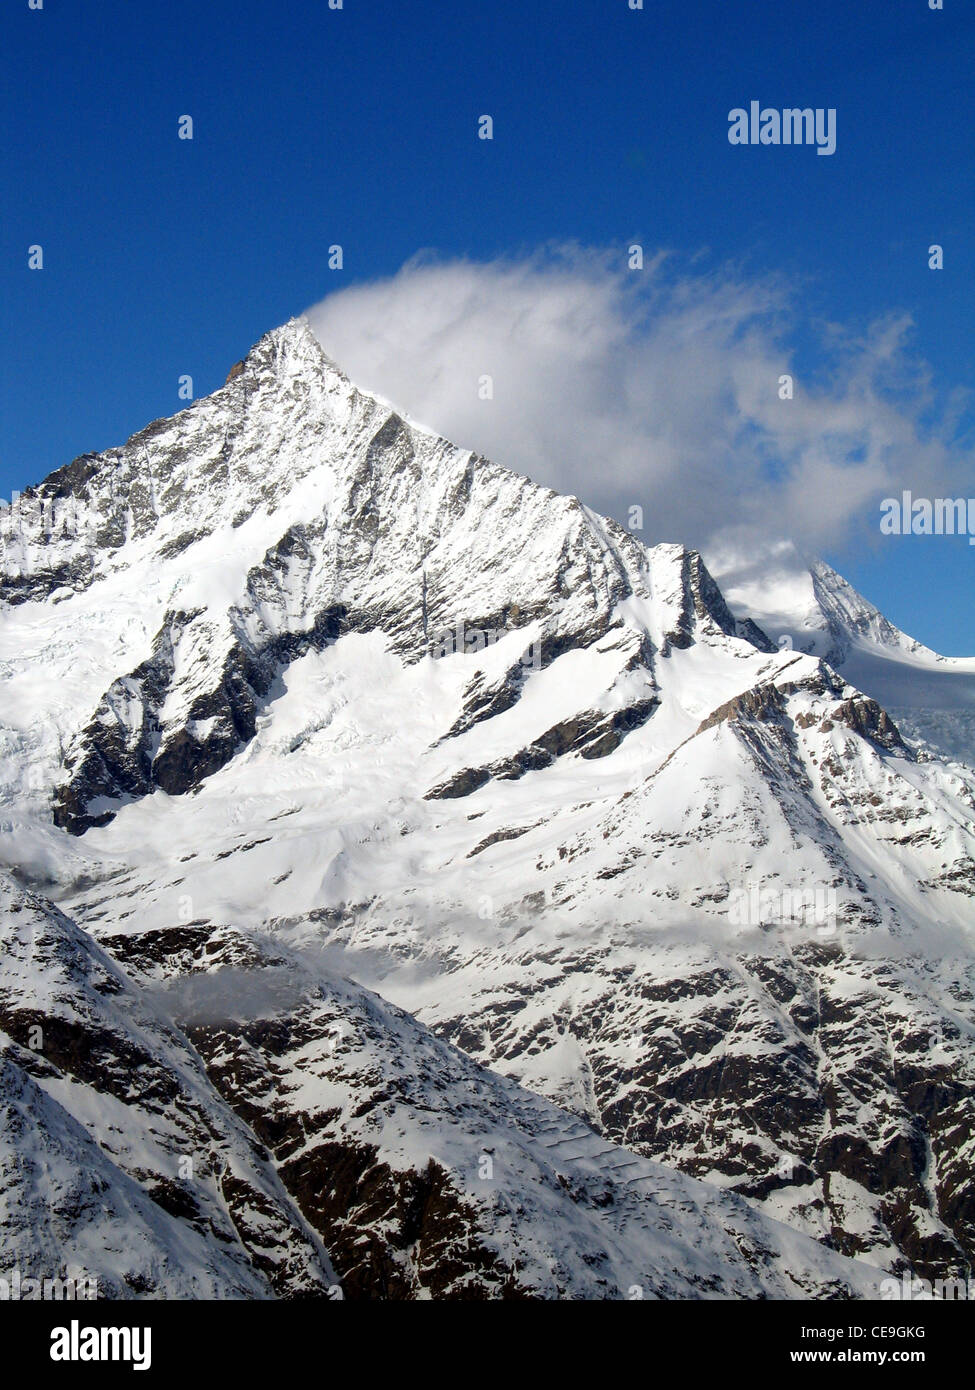 Vista del Matterhorn, Monte Cervino o Mont Cervin montaña en los Alpes Peninos en la frontera entre Suiza e Italia. Foto de stock